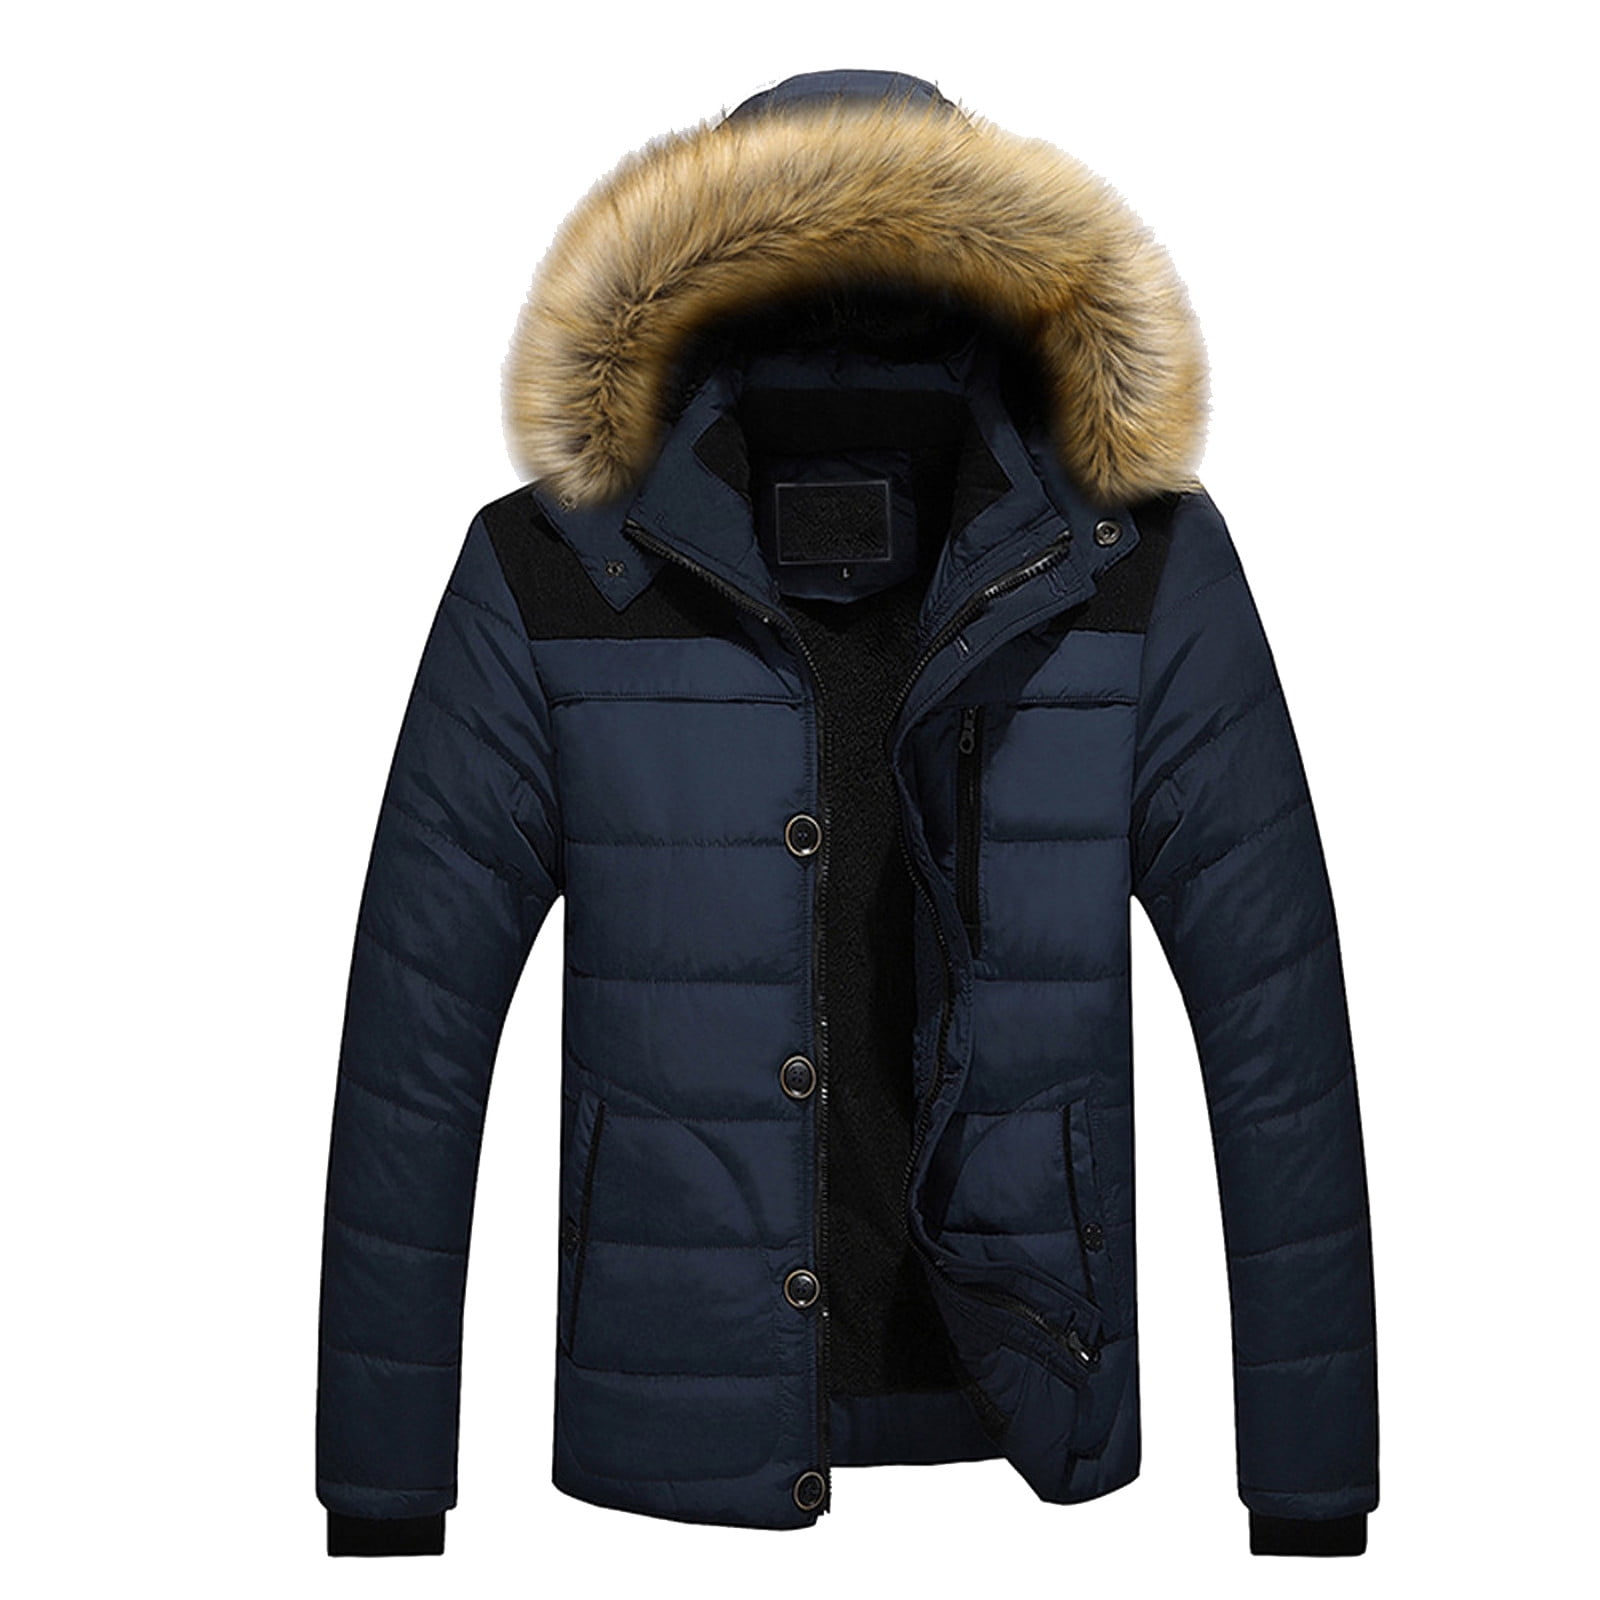 Winter Coat Men Outdoor Warm Winter Thick Jacket Hooded Coat Jacket ...